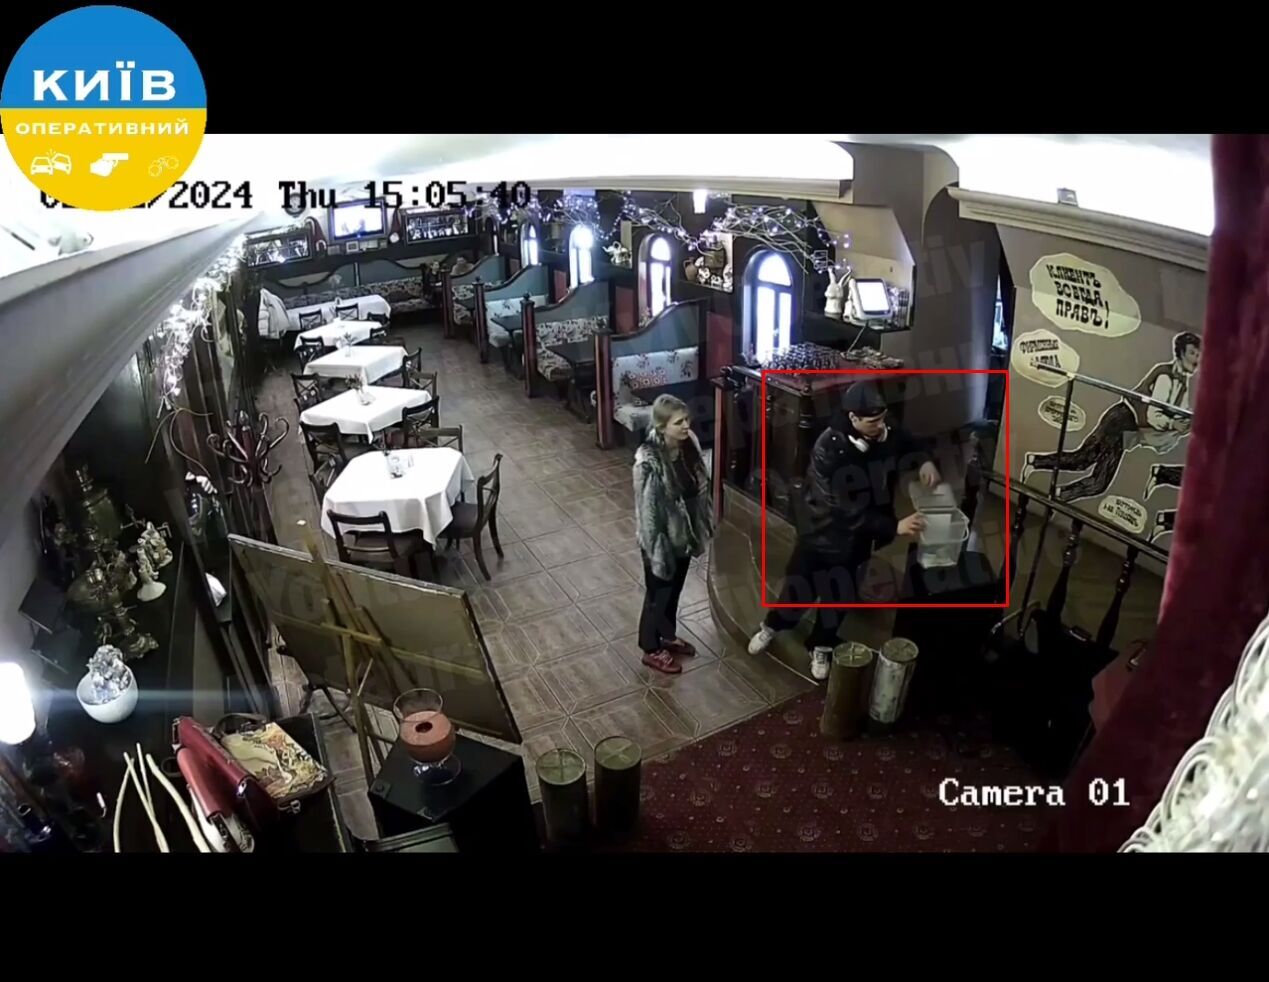 В ресторане Киева пара украла деньги из ящика для сбора на ВСУ: одного преступника задержали. Фото и видео